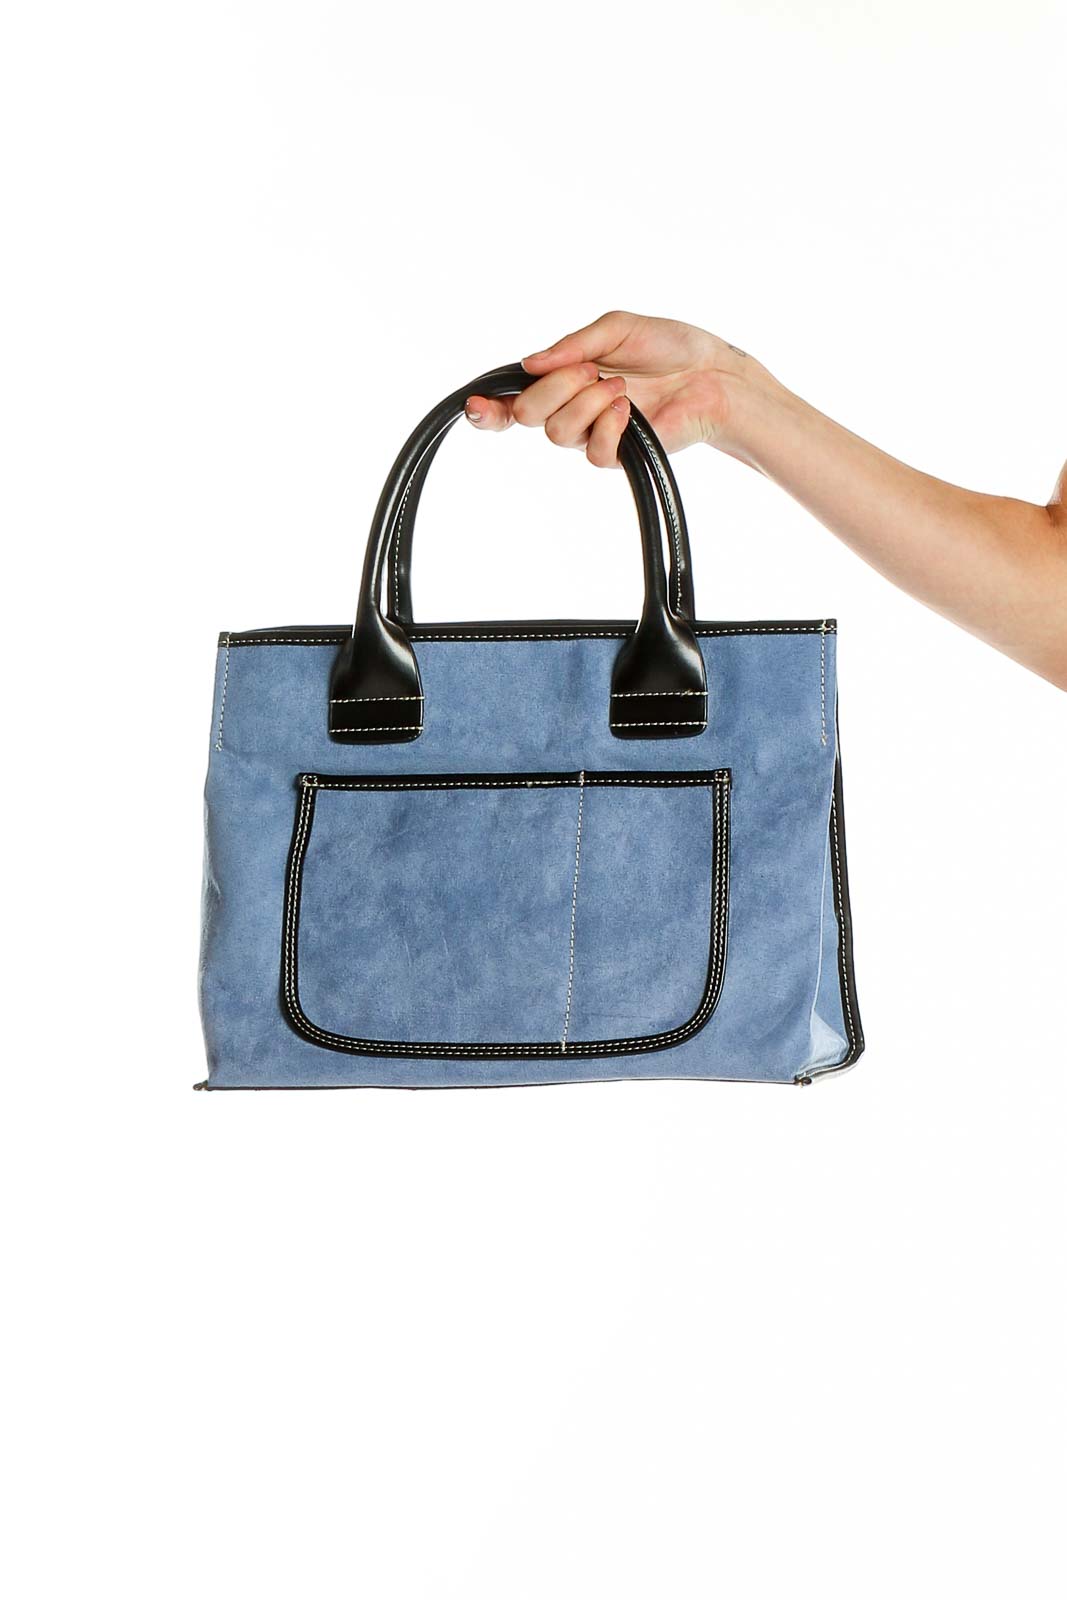 Blue Satchel Bag Front